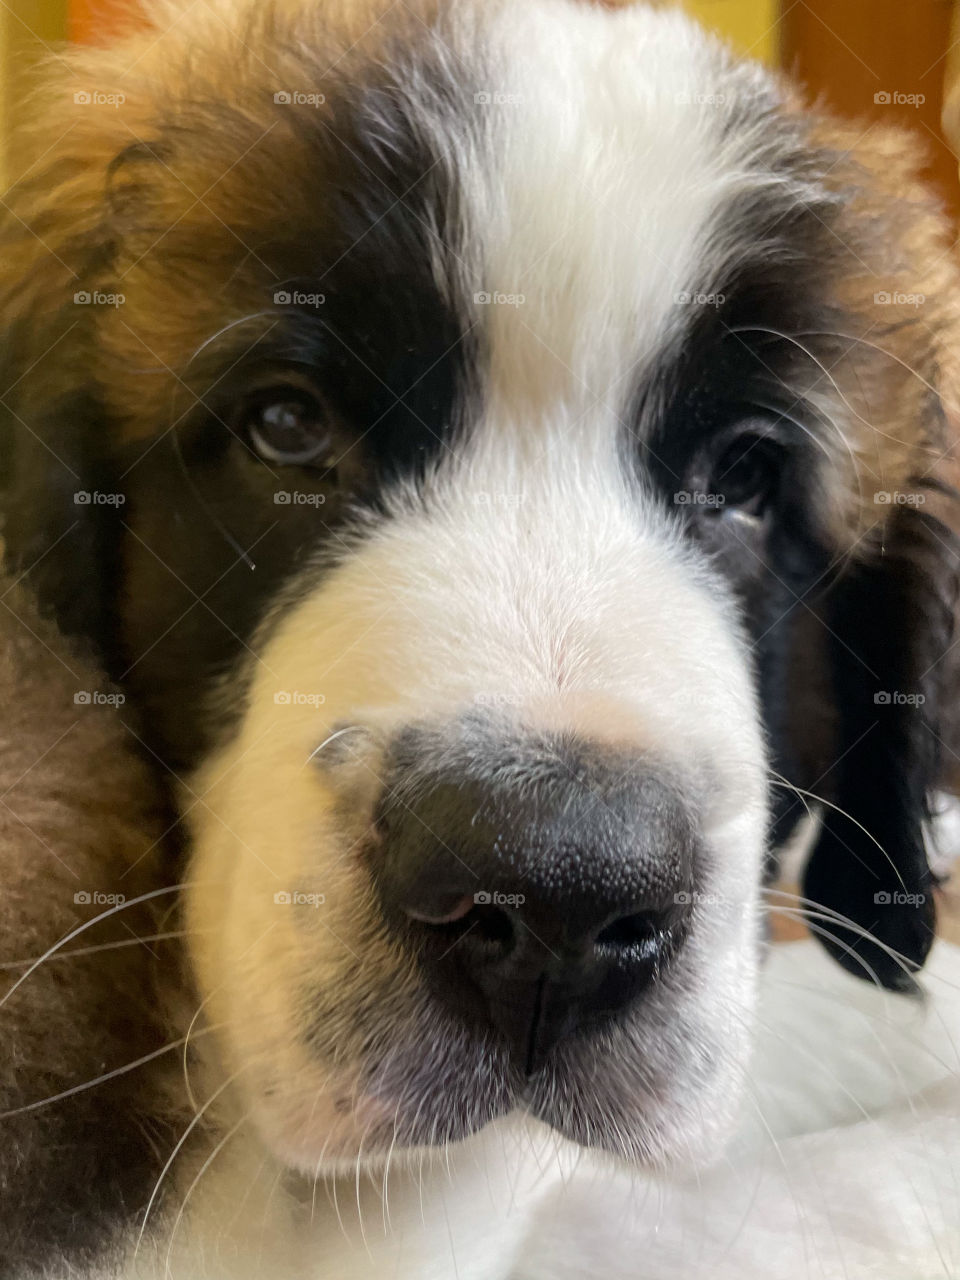 The look of love - Saint Bernard puppy close up 